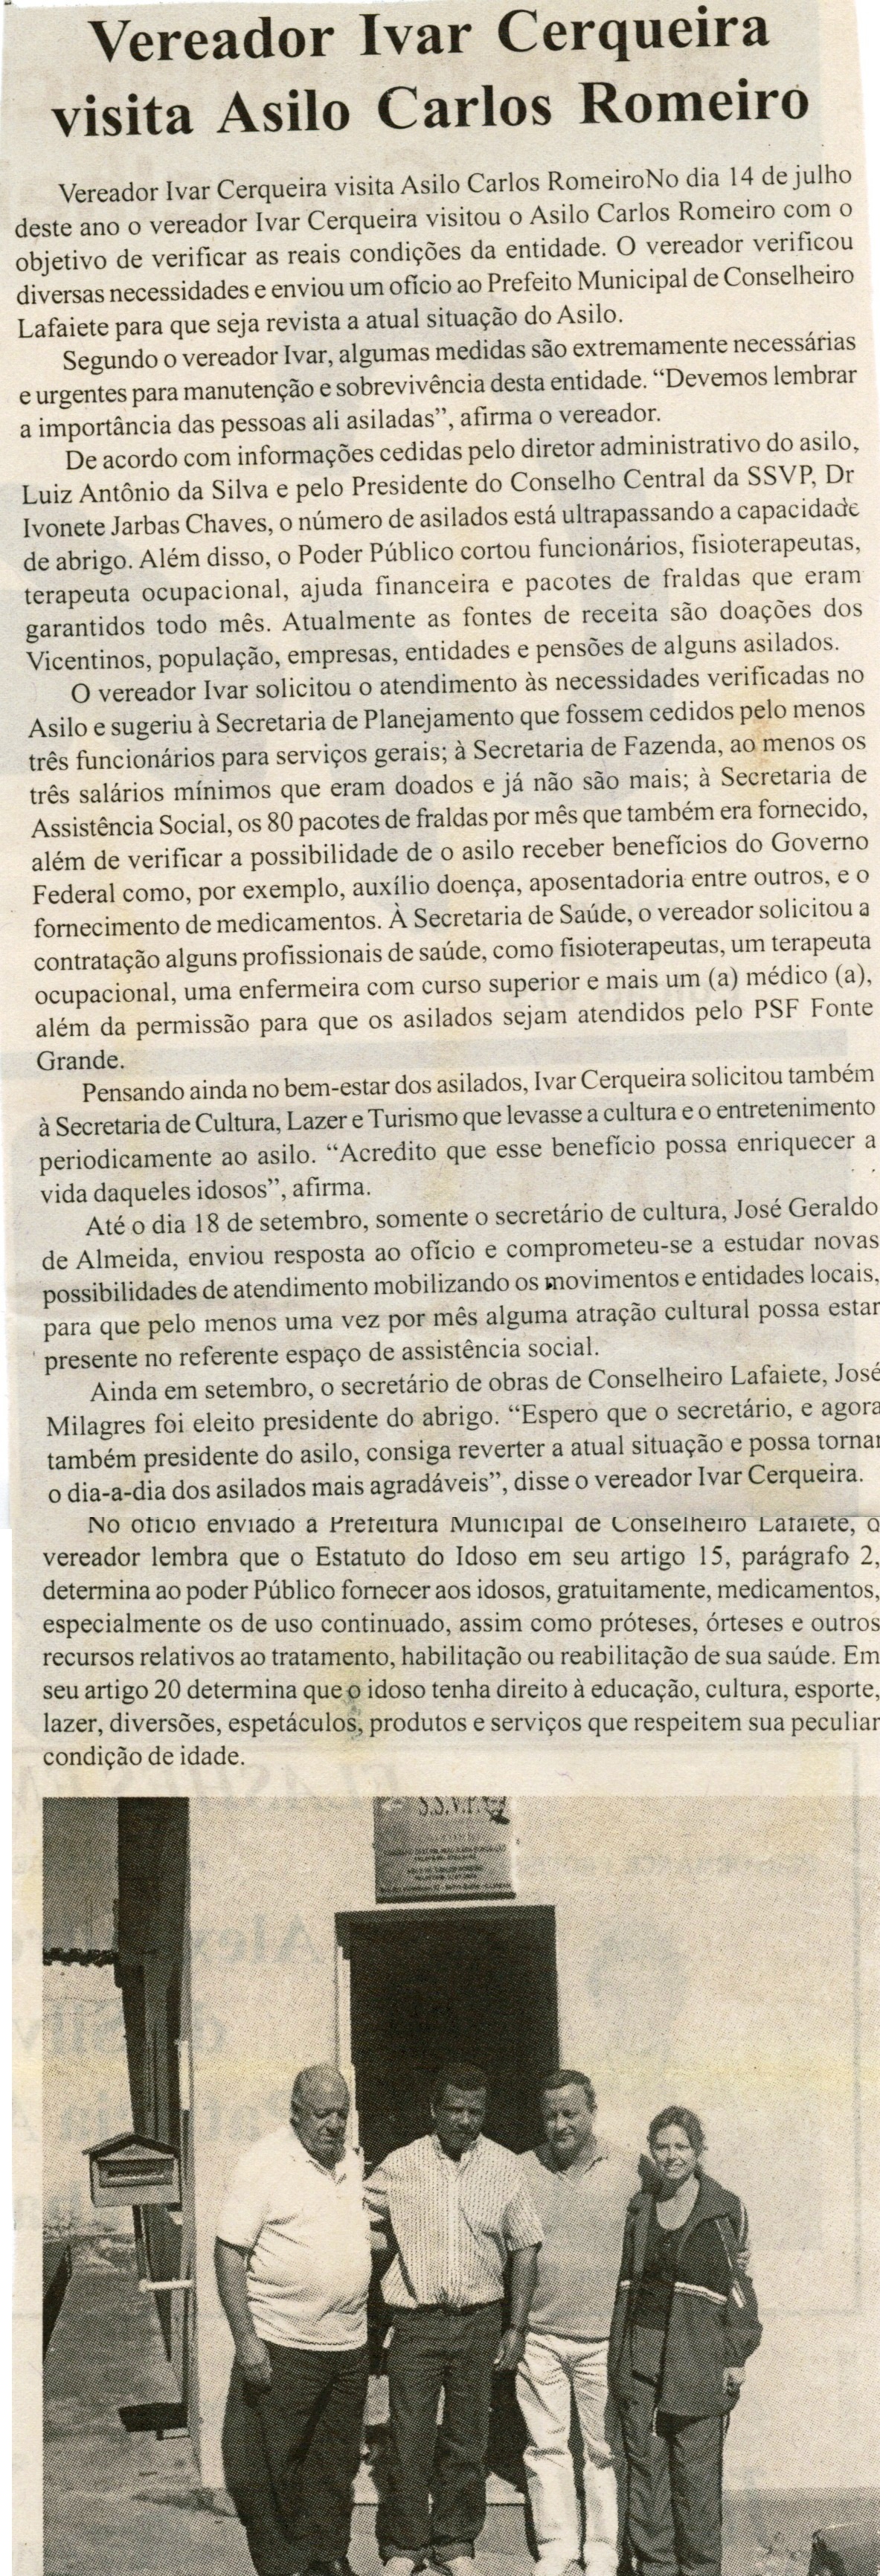 Vereador Ivar Cerqueira visita Asilo Carlos Romeiro. Jornal Gazeta, Conselheiro Lafaiete, 15 set. 2007, 479ª ed. , p. 02.